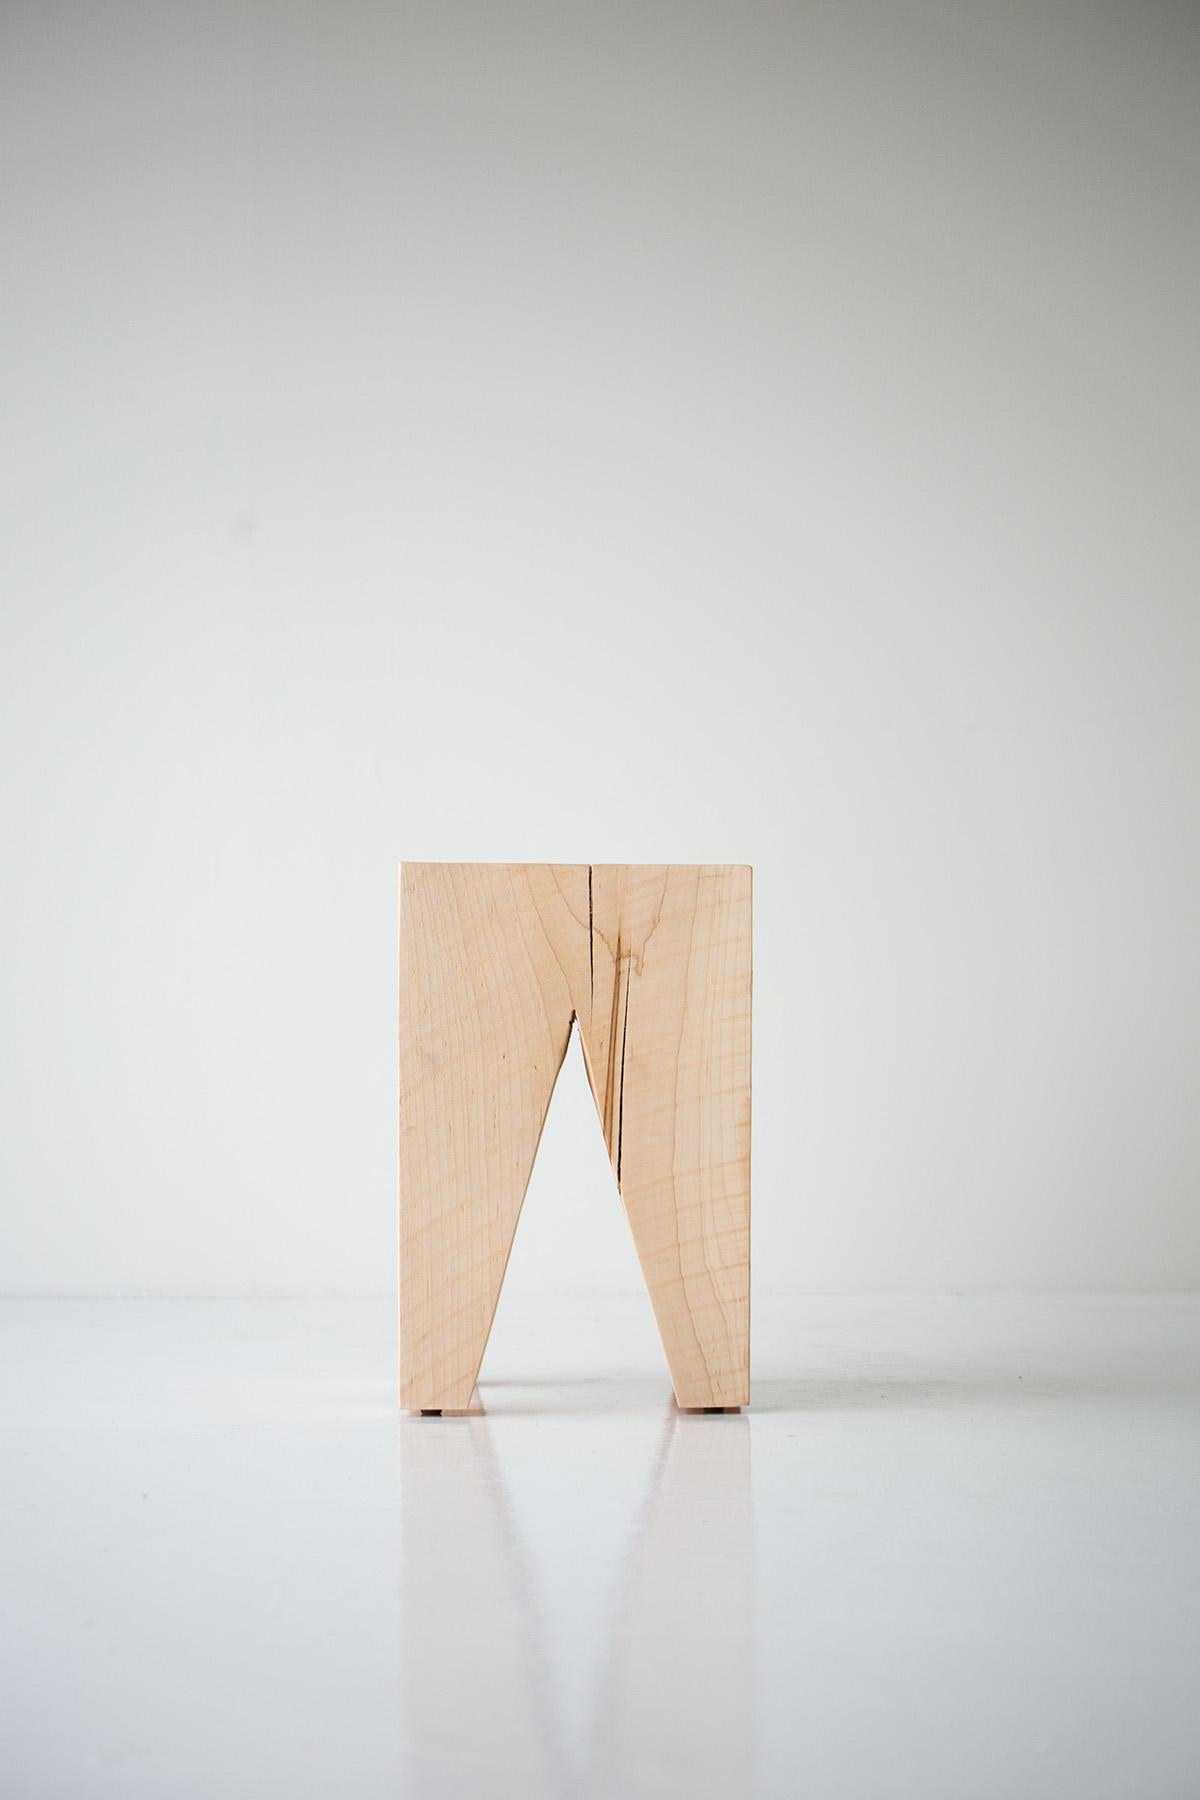 Modern Wood Stool - The Vega For Sale 2